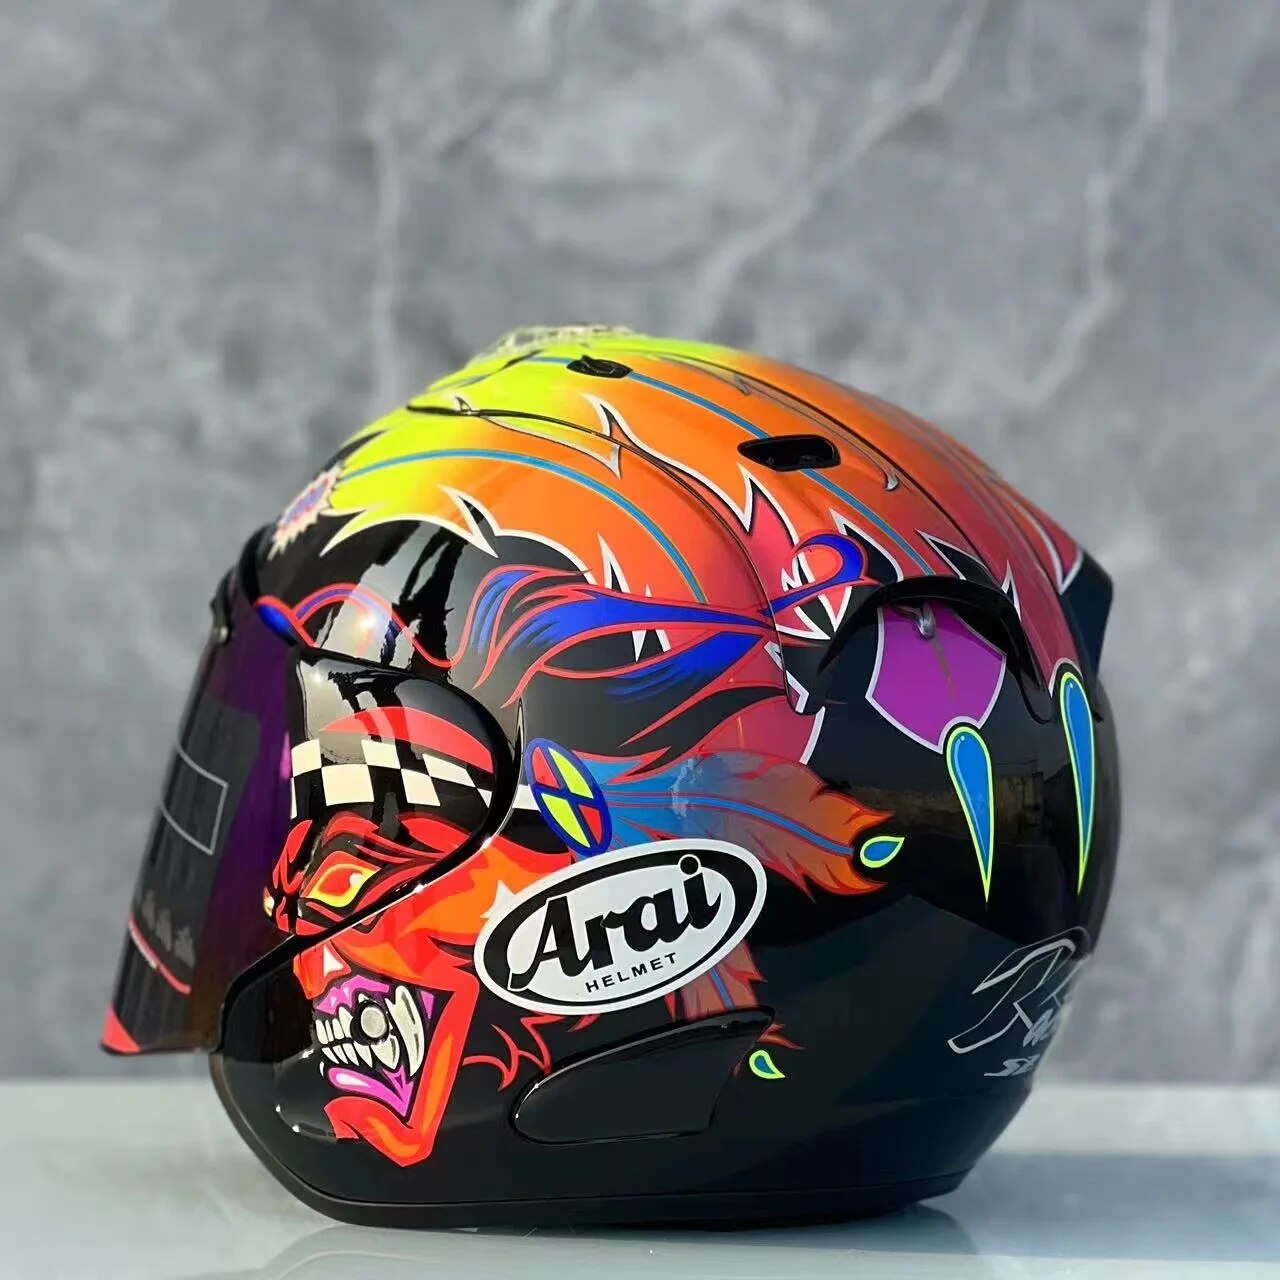 RAM3 Open Face Half Helmet Motorcycle Helmet Riding Motocross Racing Motobike Helmet Capacete New color